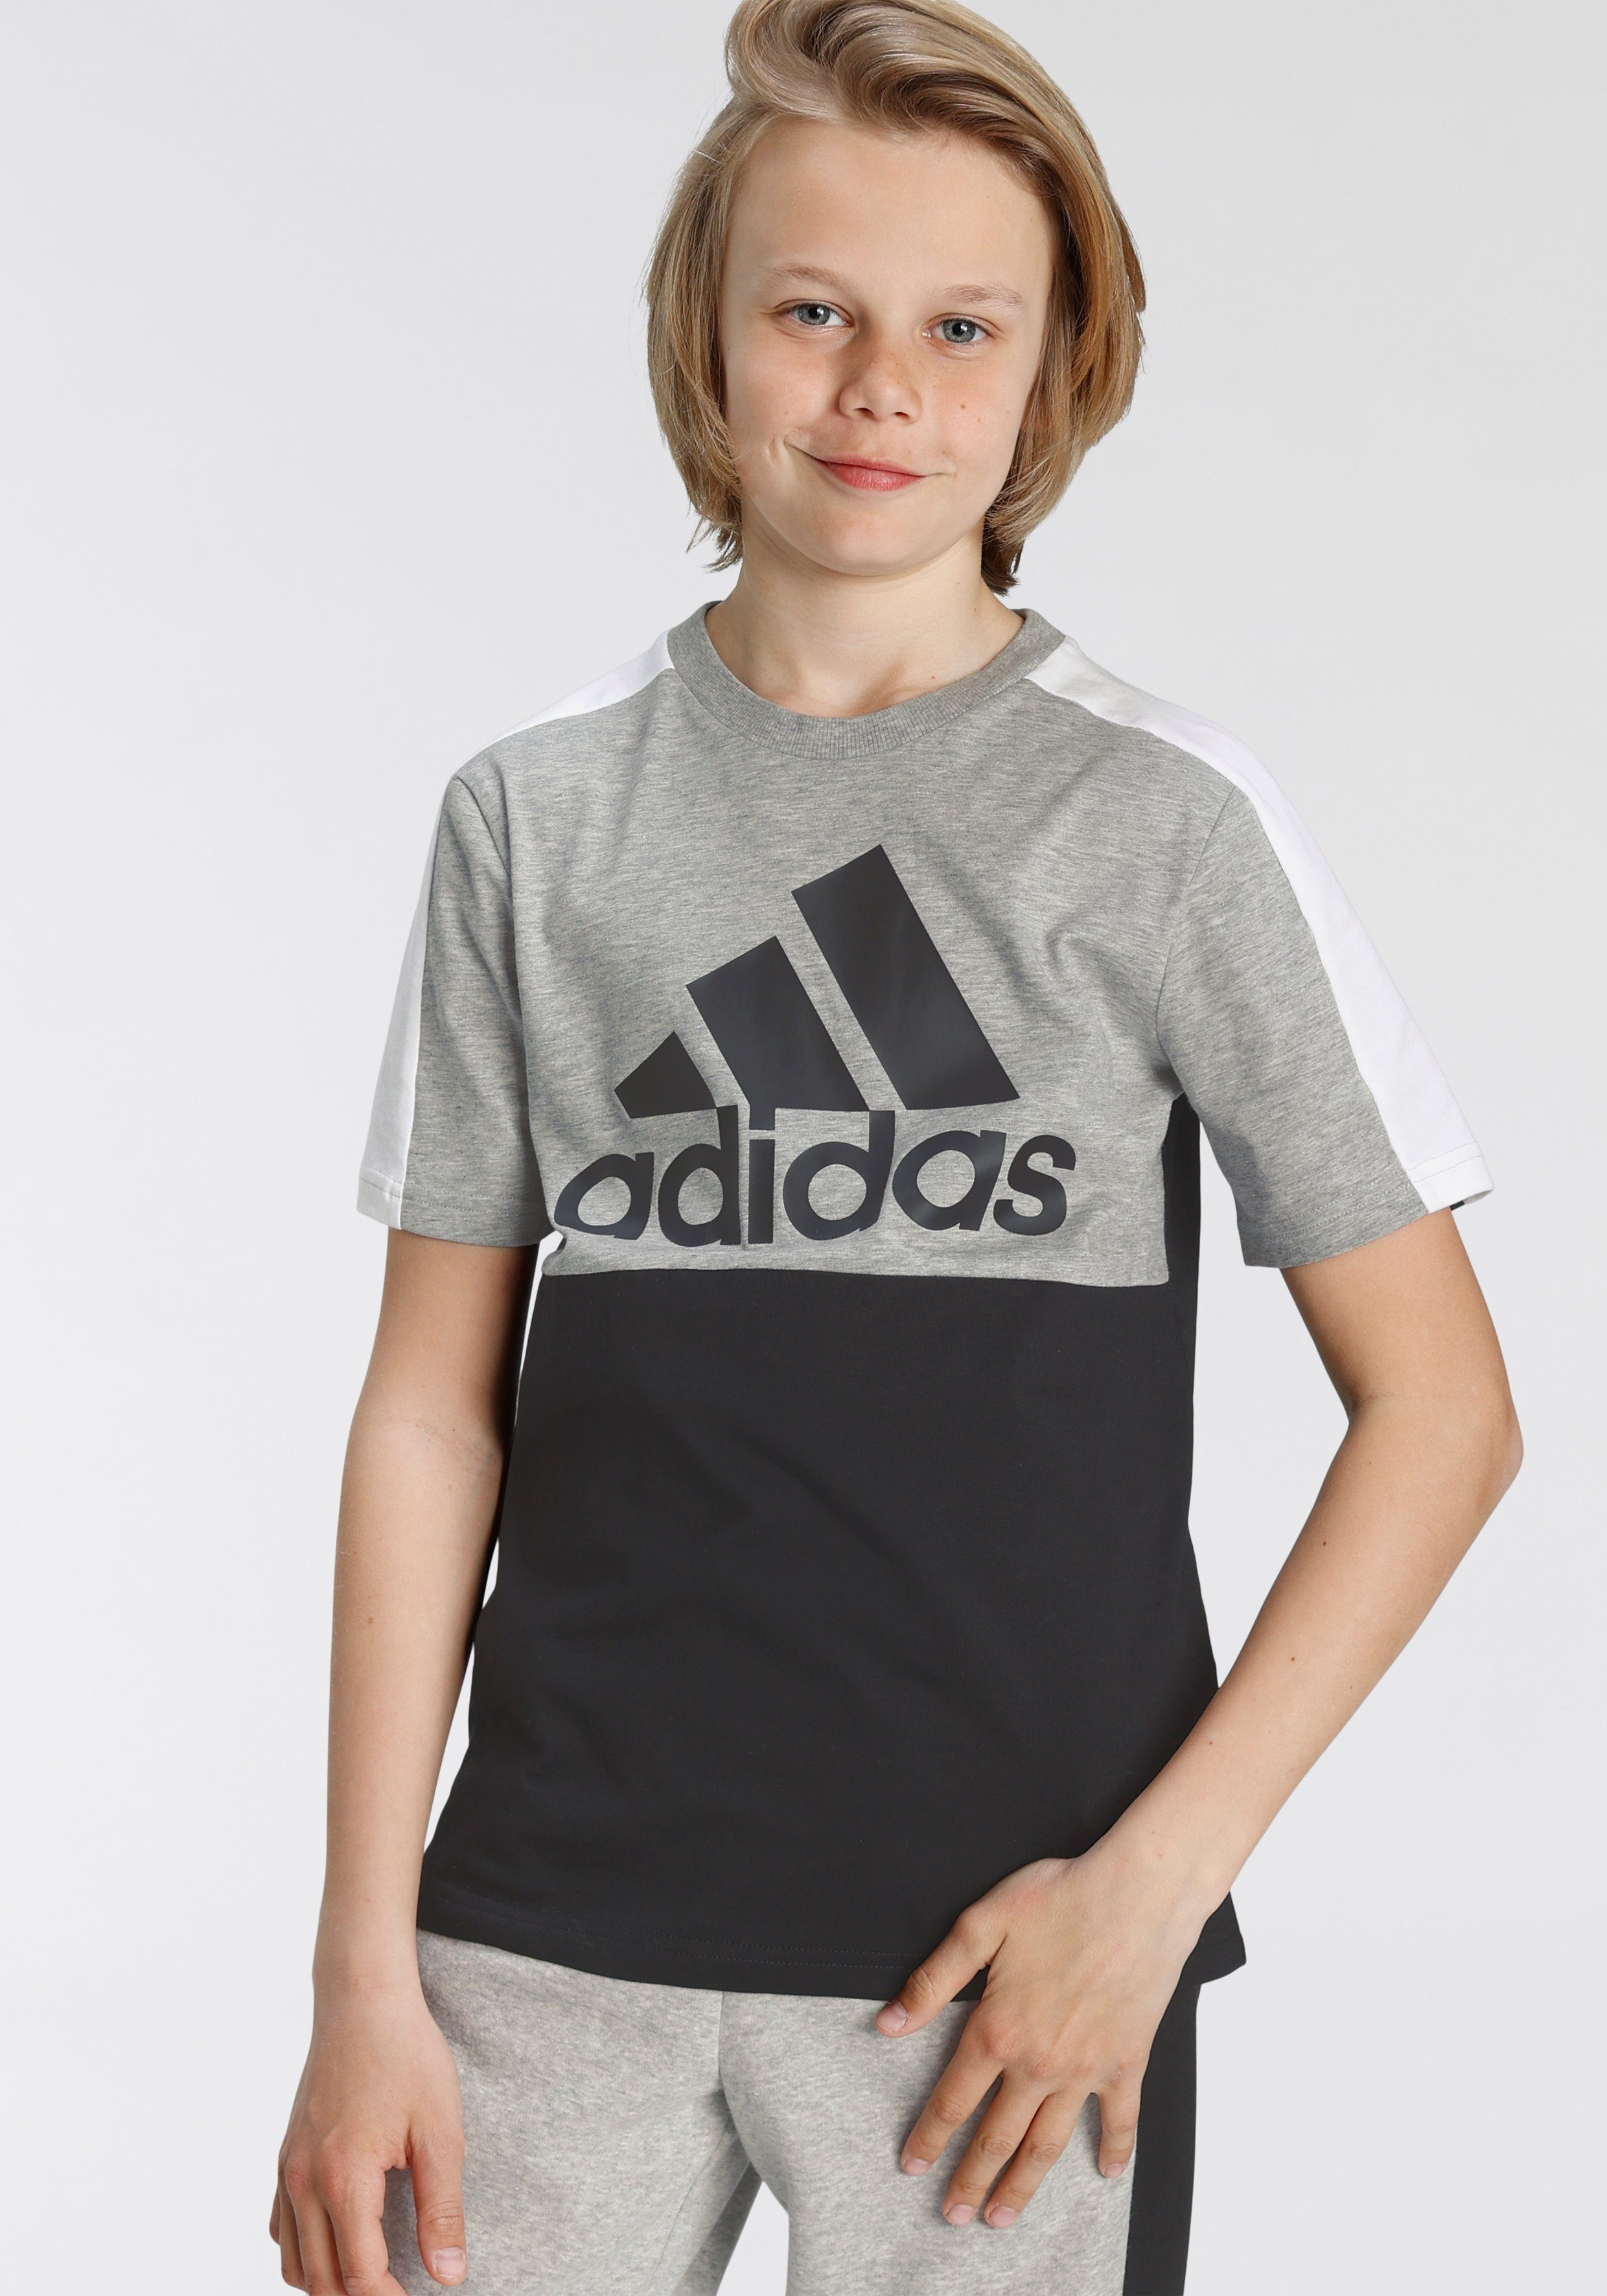 adidas Jungen T-Shirts online kaufen | OTTO